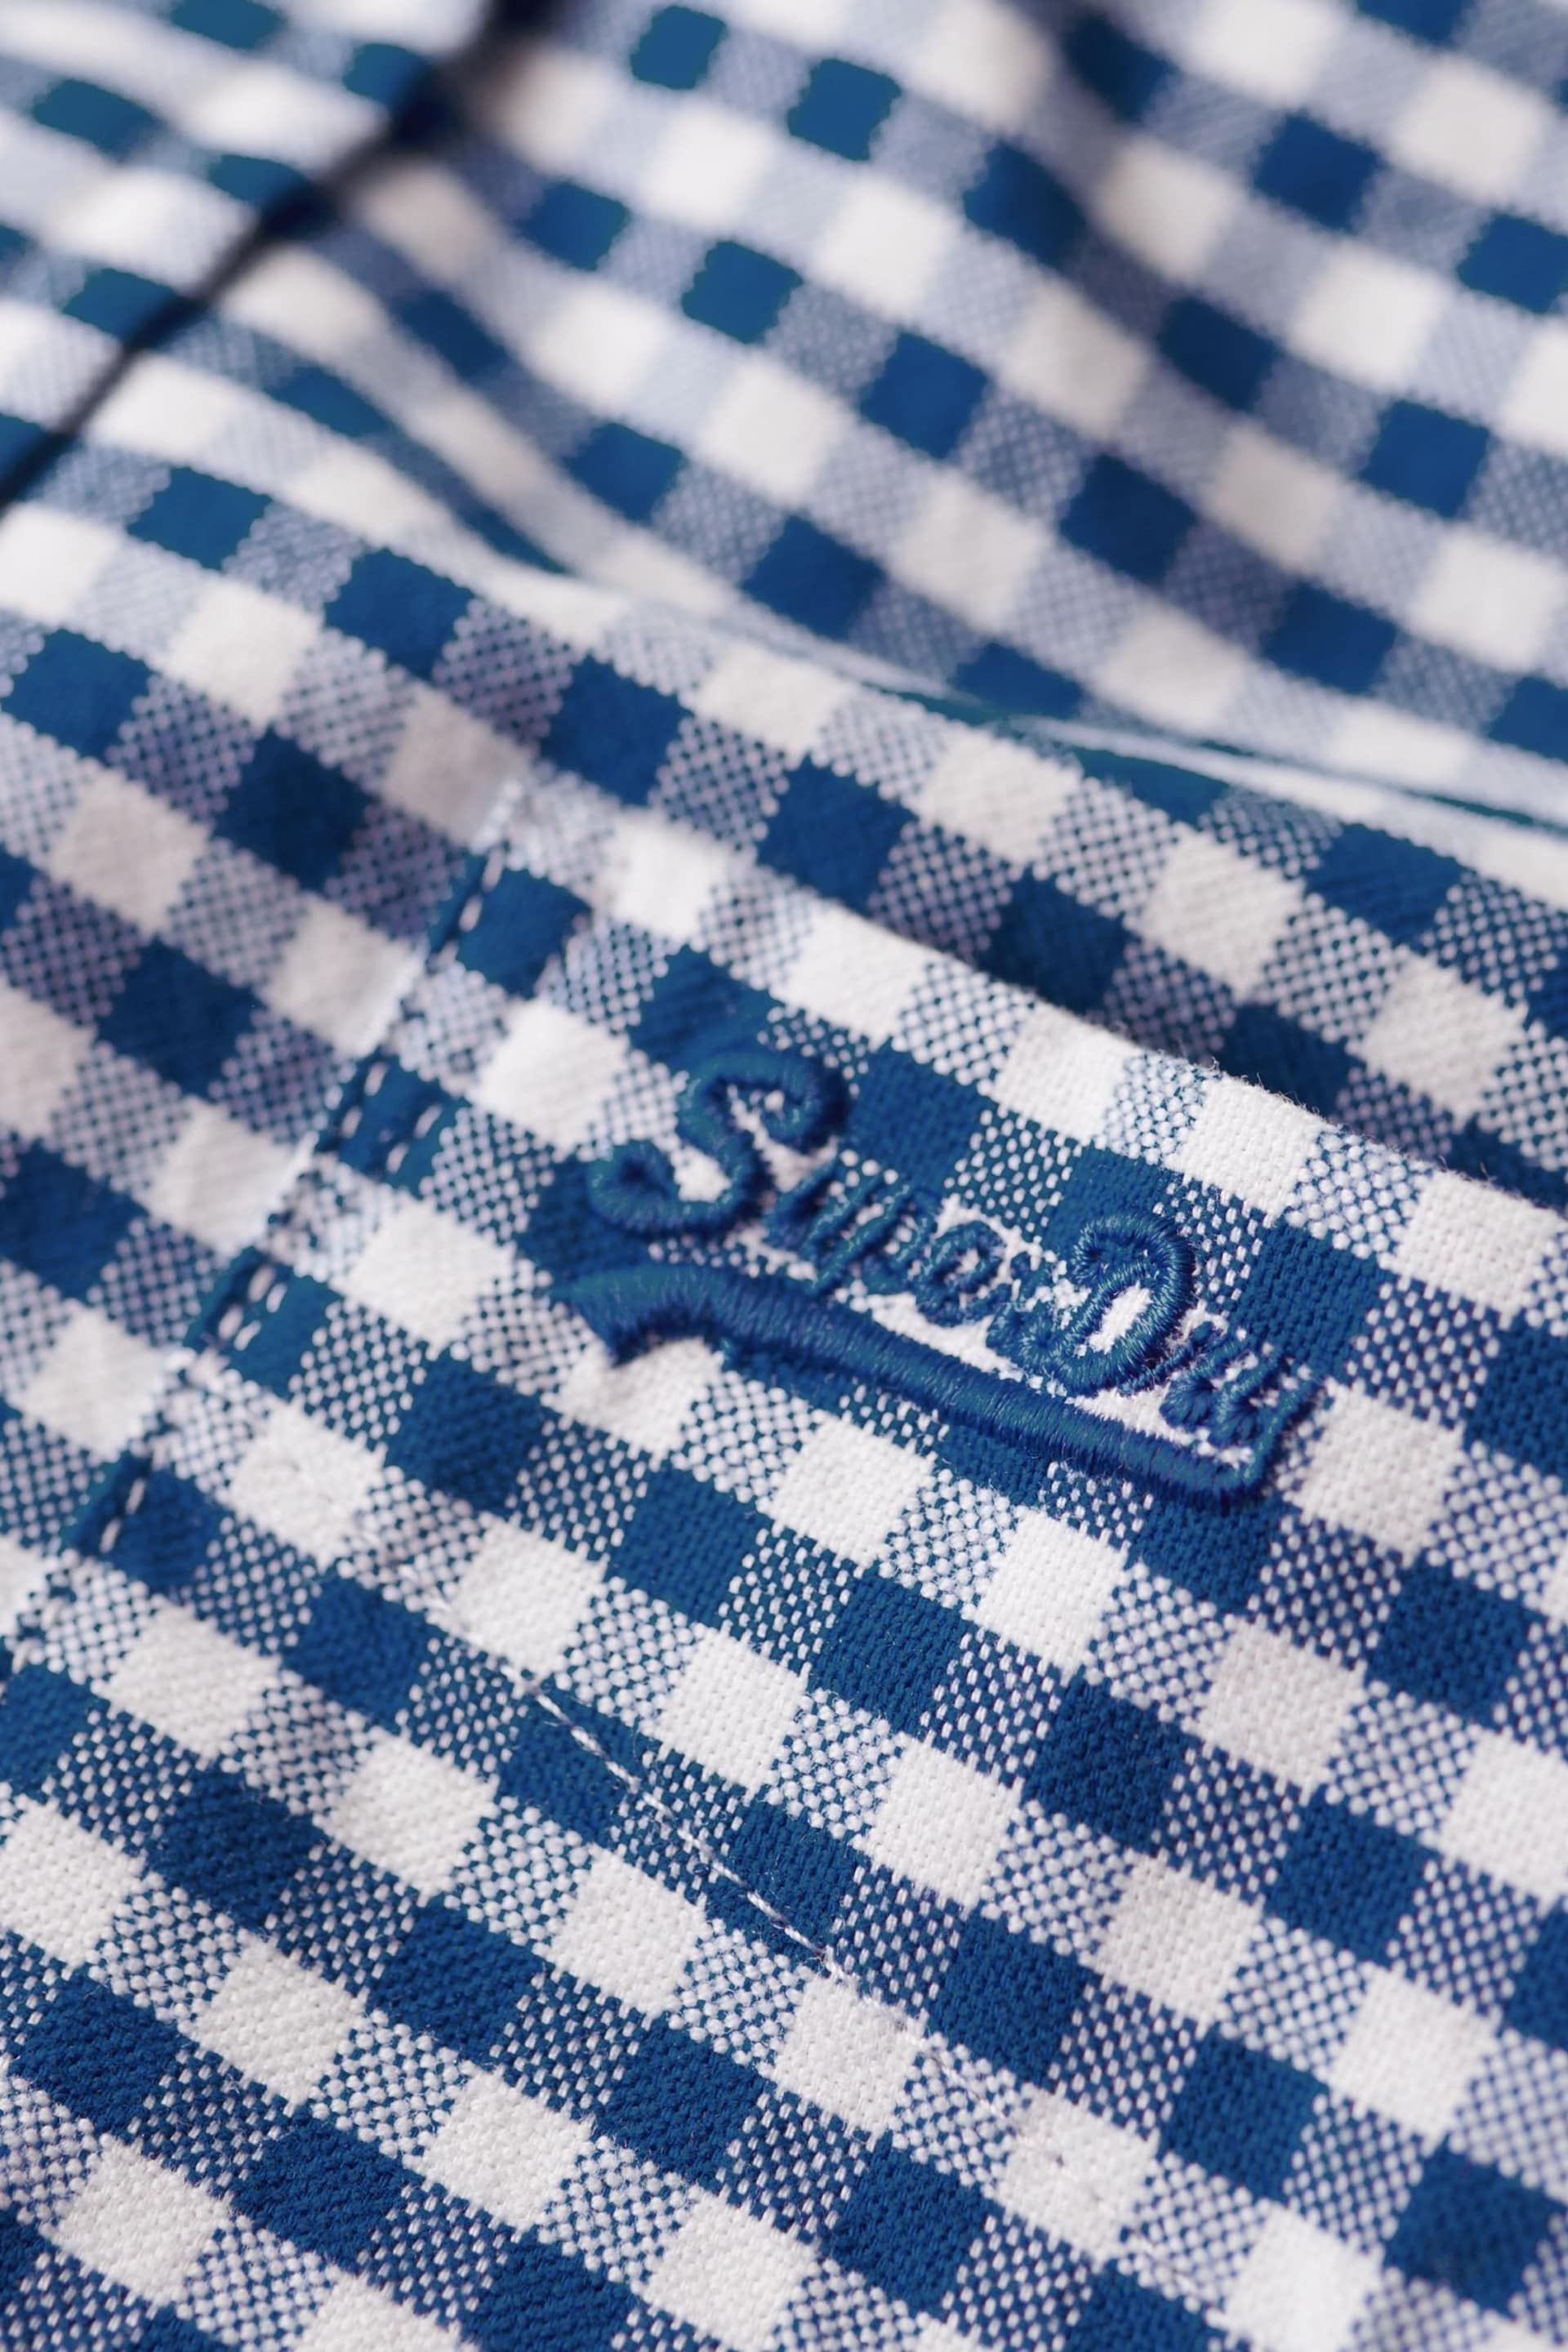 Superdry Blue/Black Vintage Washed Oxford Shirt - Image 6 of 6